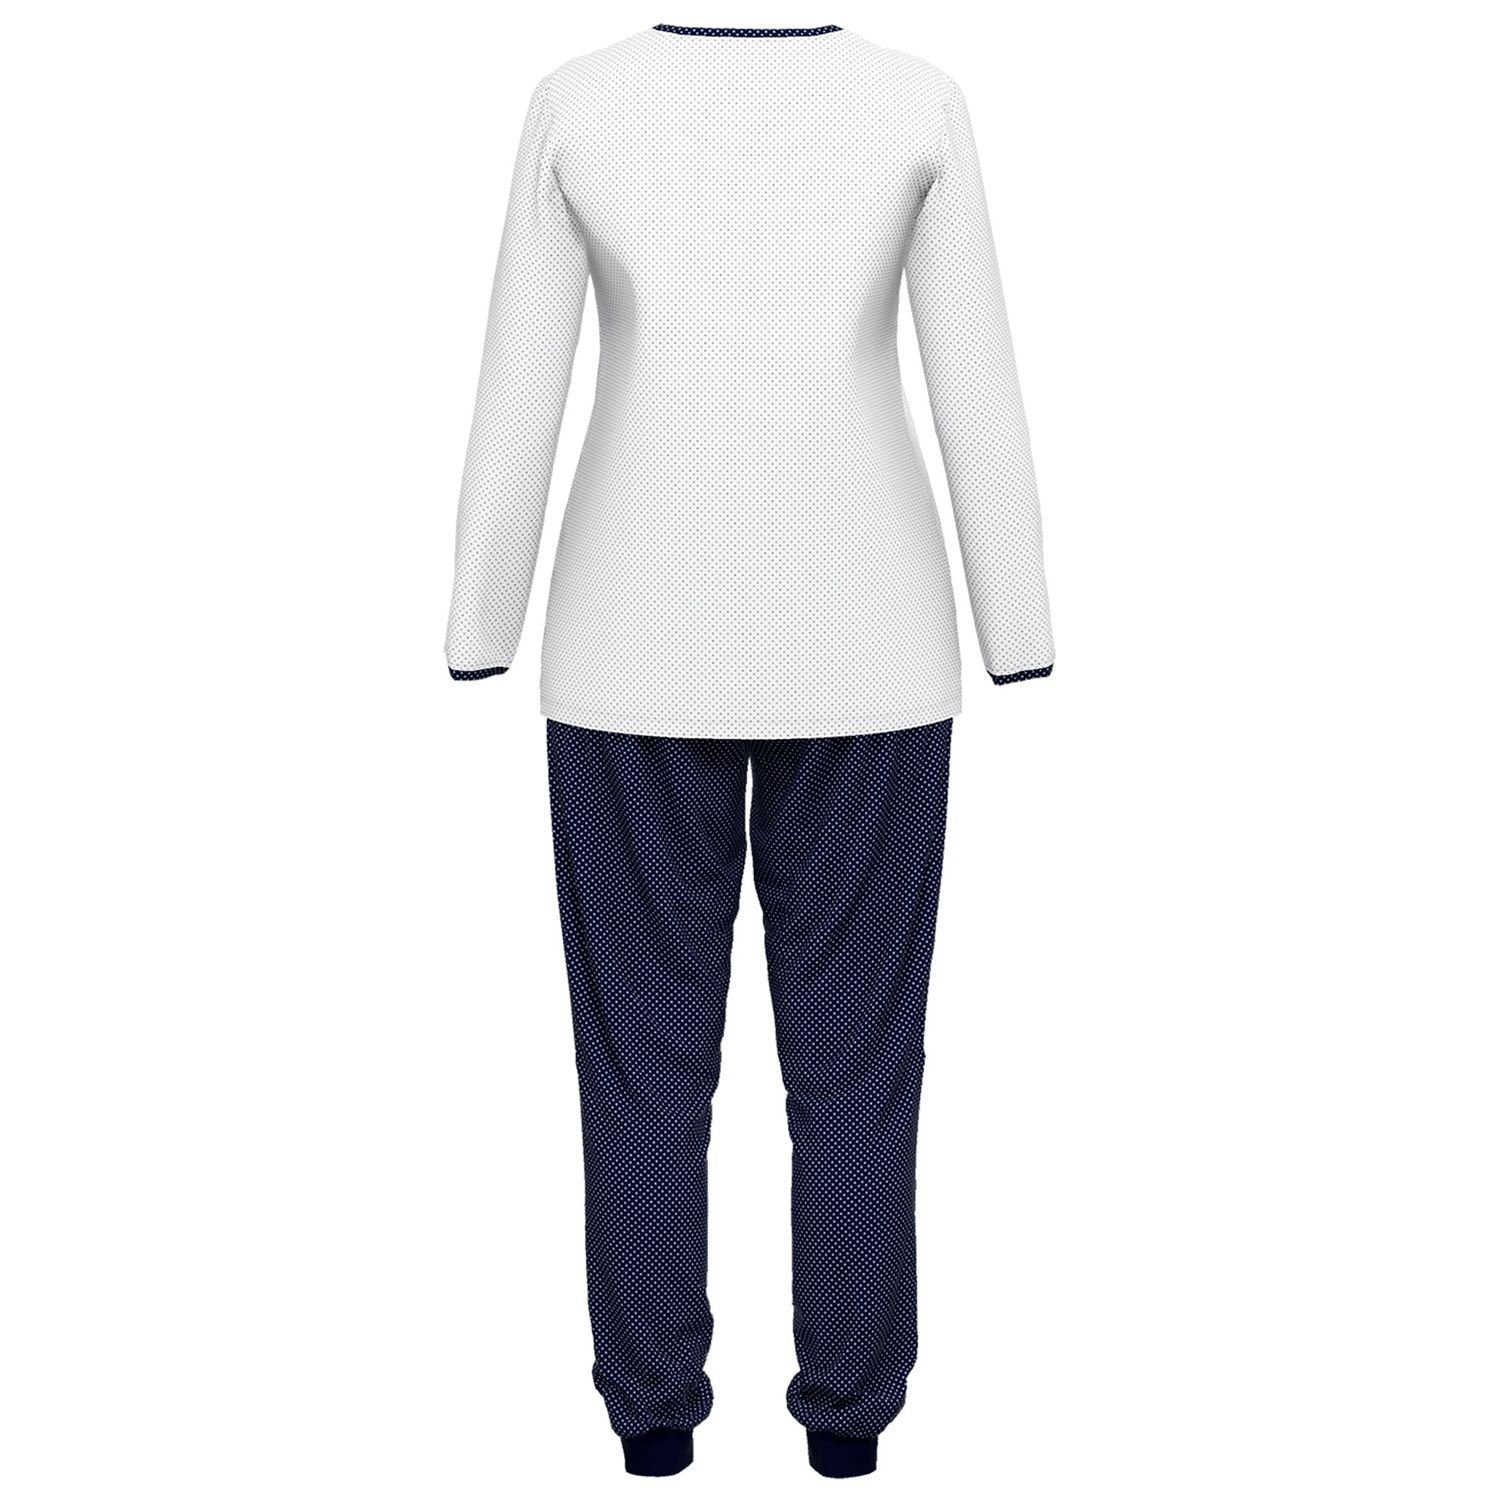 Schlafanzug navy / weiß gepunktet reine langarm, weich, bequem, mit Knöpfe, Henley-Auschnitt, Baumolle GÖTZBURG